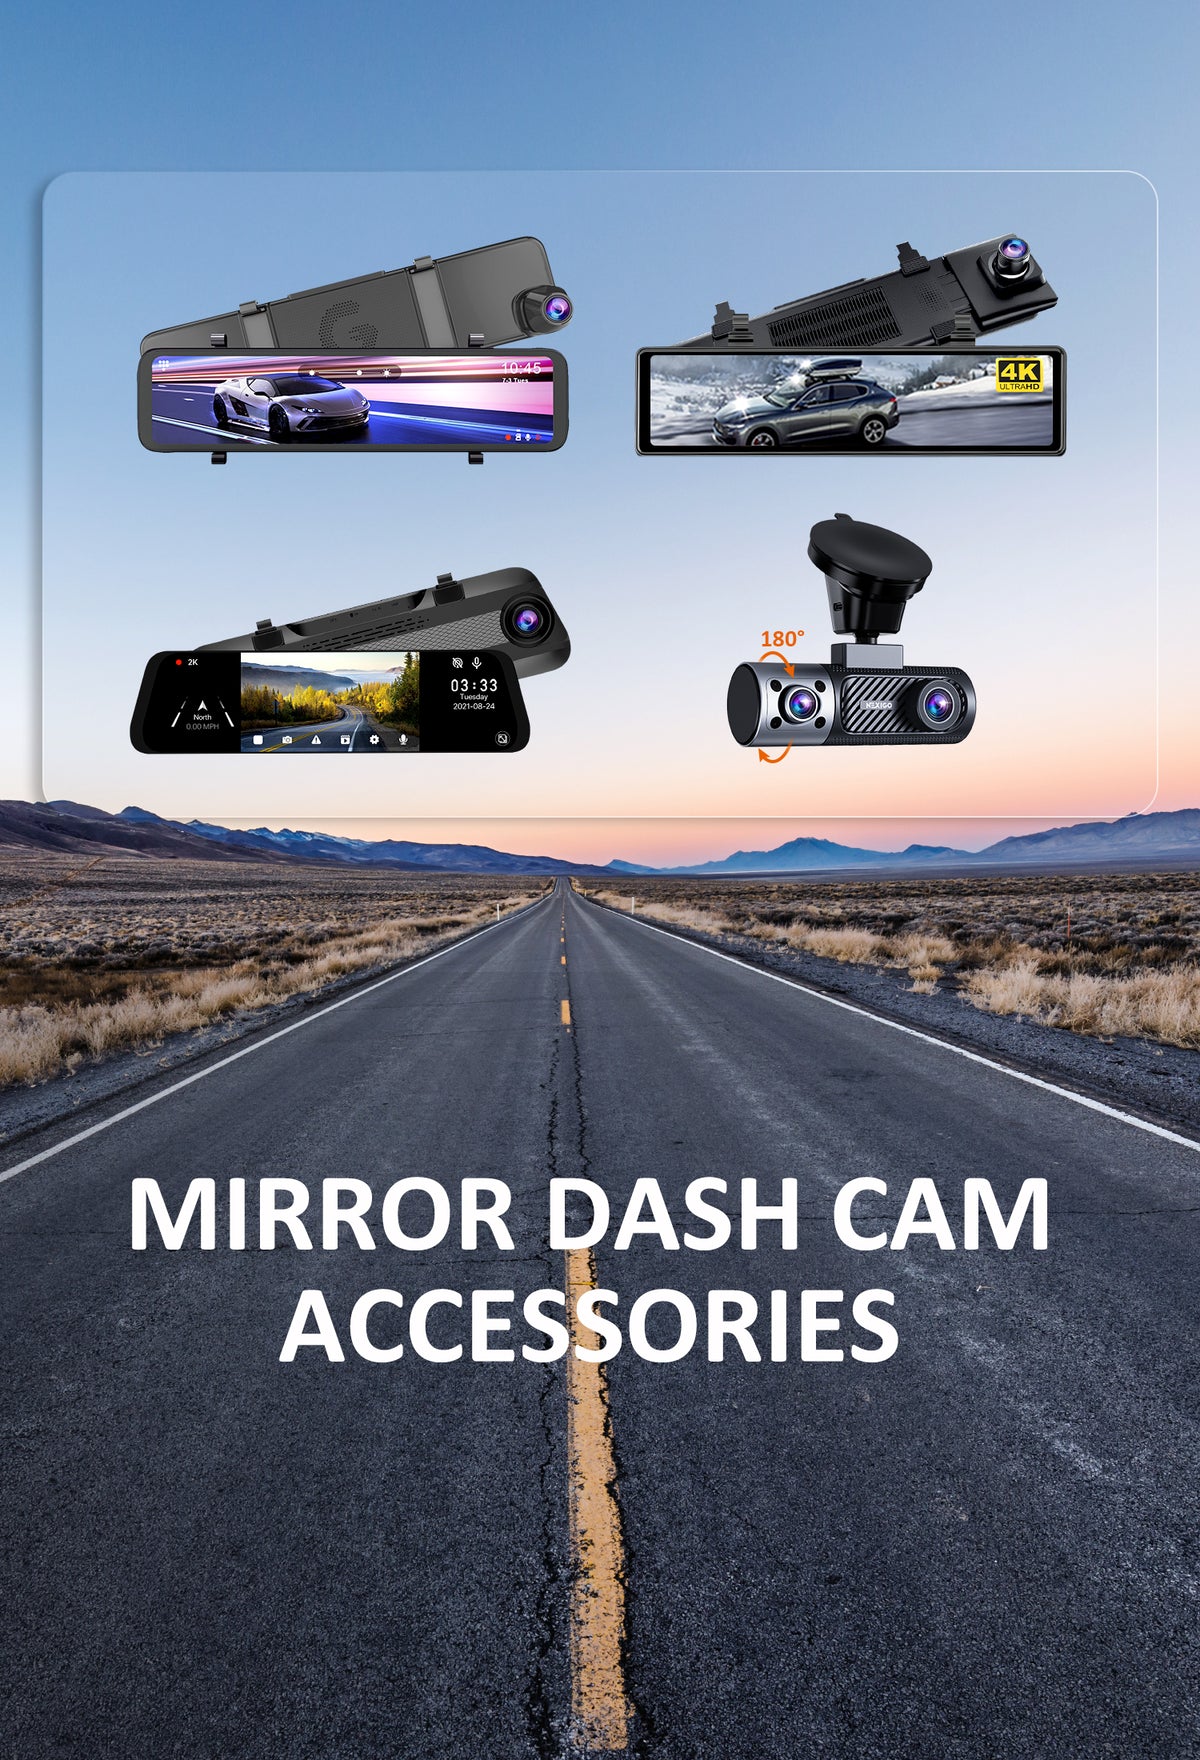 Showcasing 4 different models of NexiGo dashcams